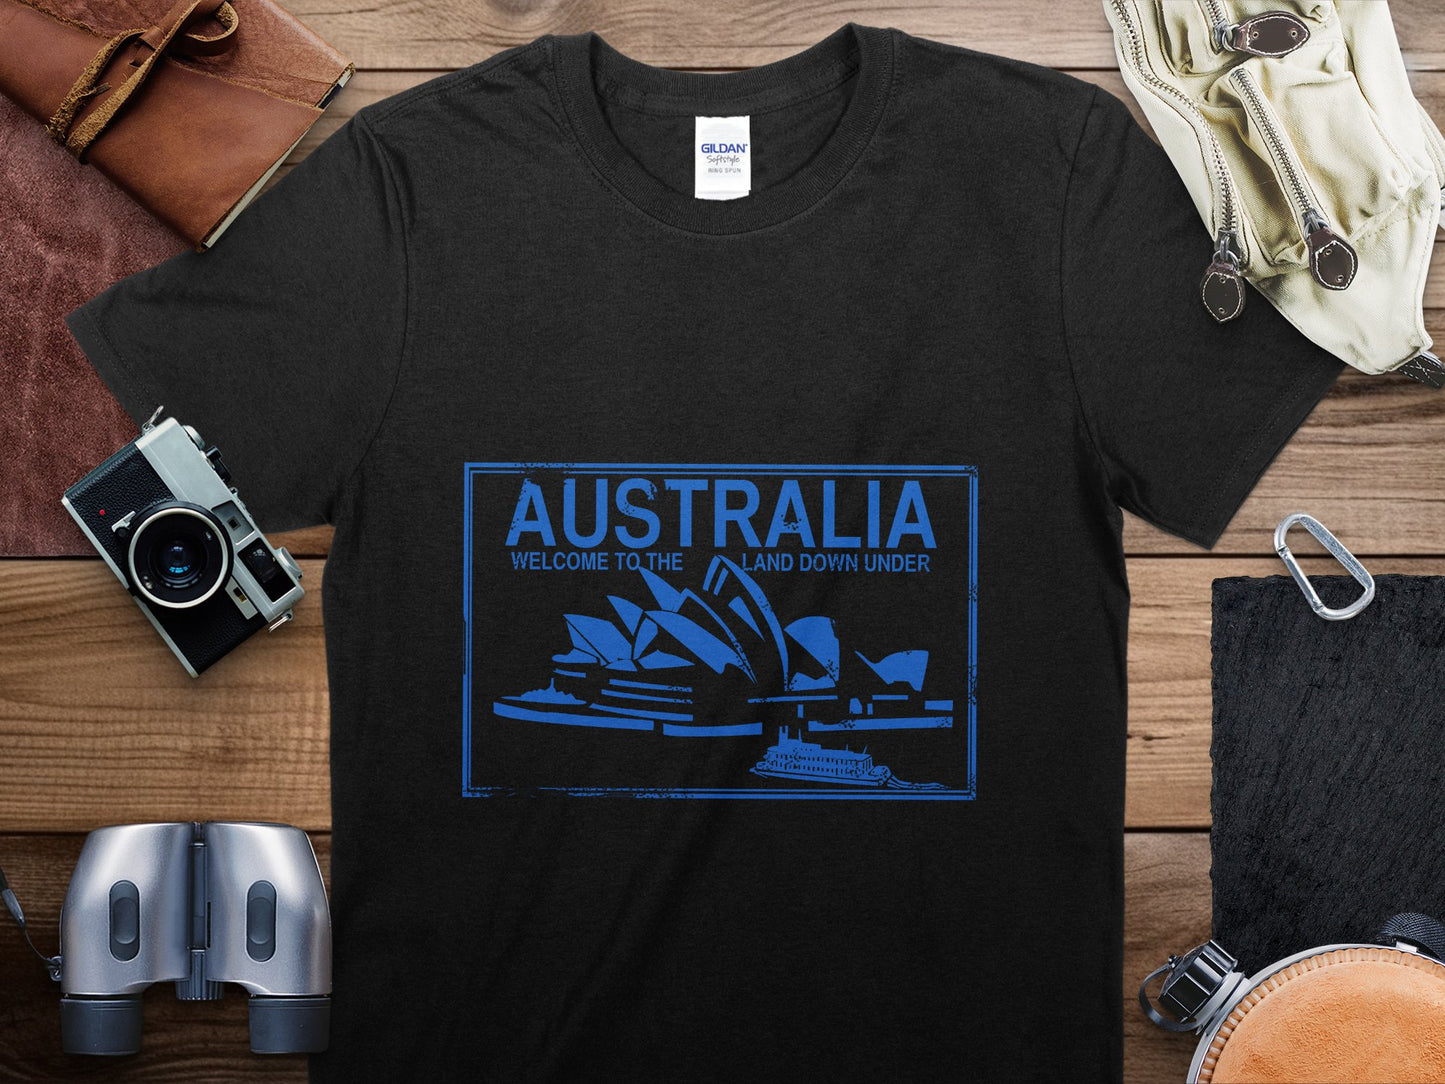 Australia Stamp Travel T-Shirt, Australia Travel Shirt